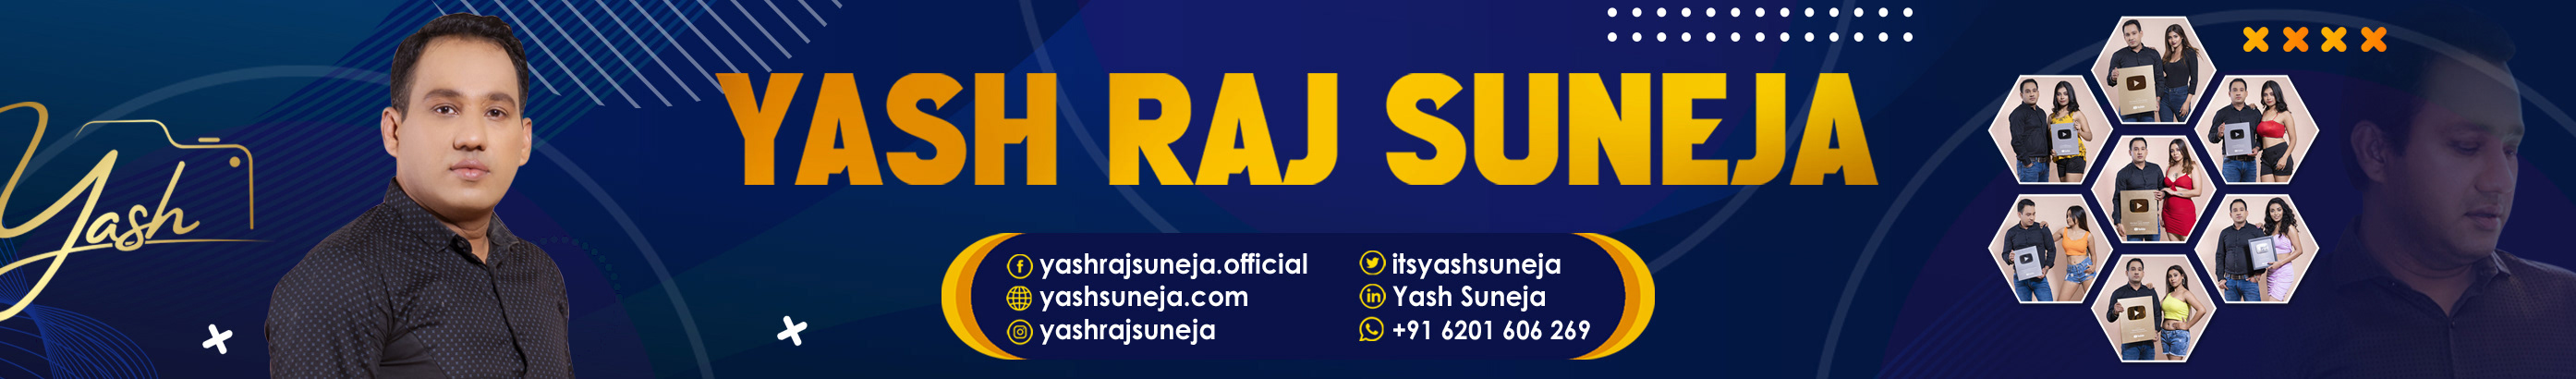 Yash Suneja's profile banner